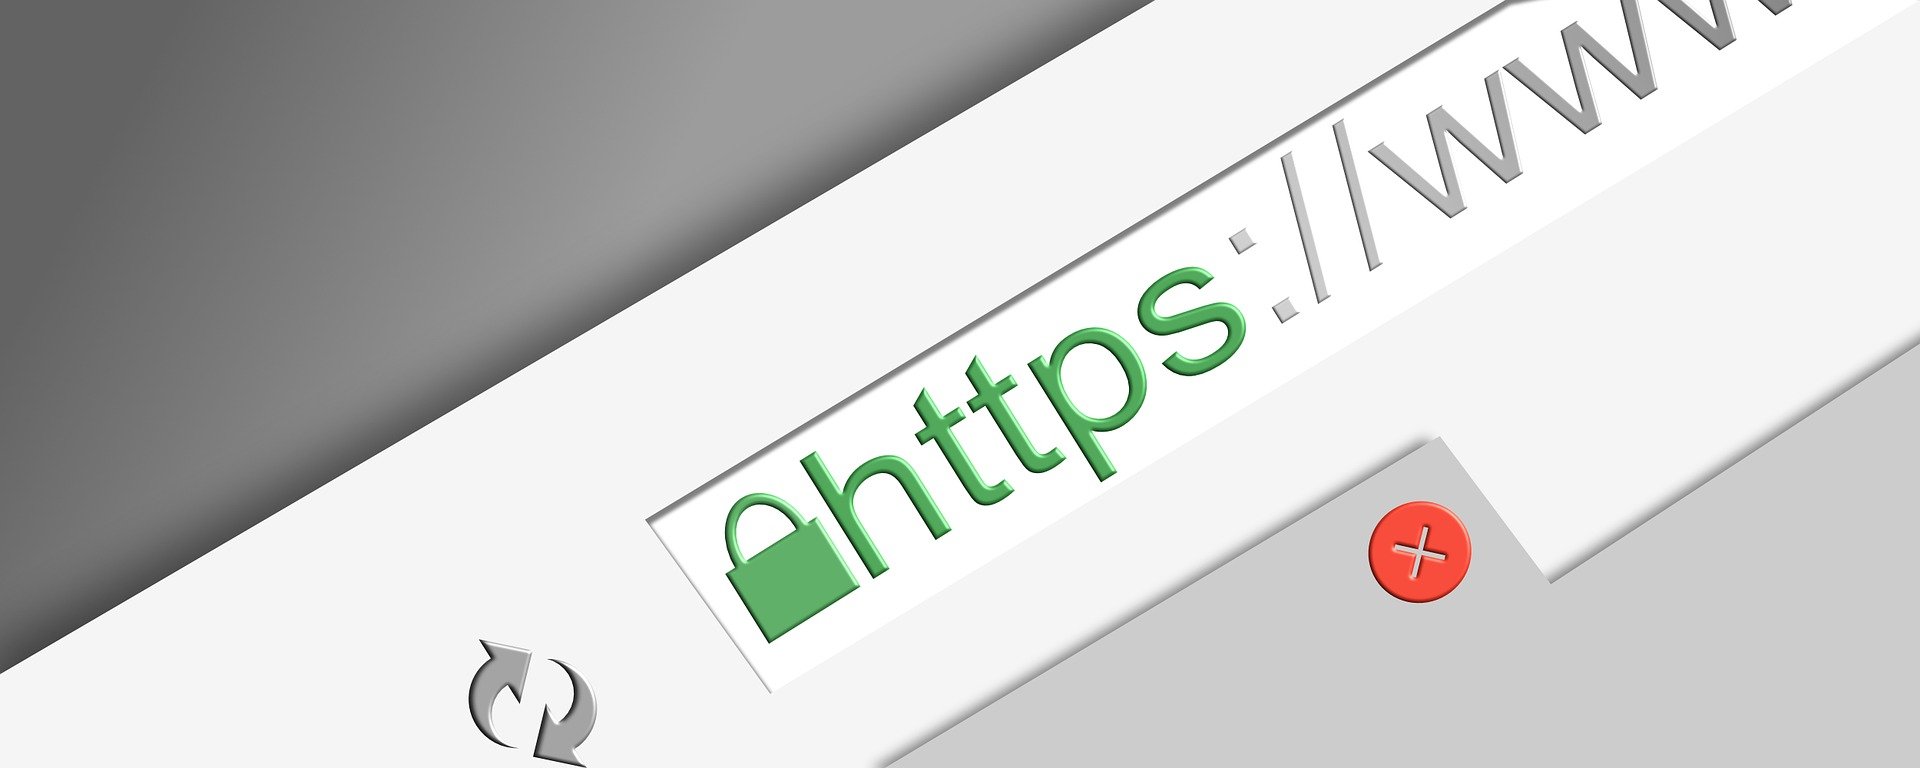 HTTPS: Seguridad al navegar en la red